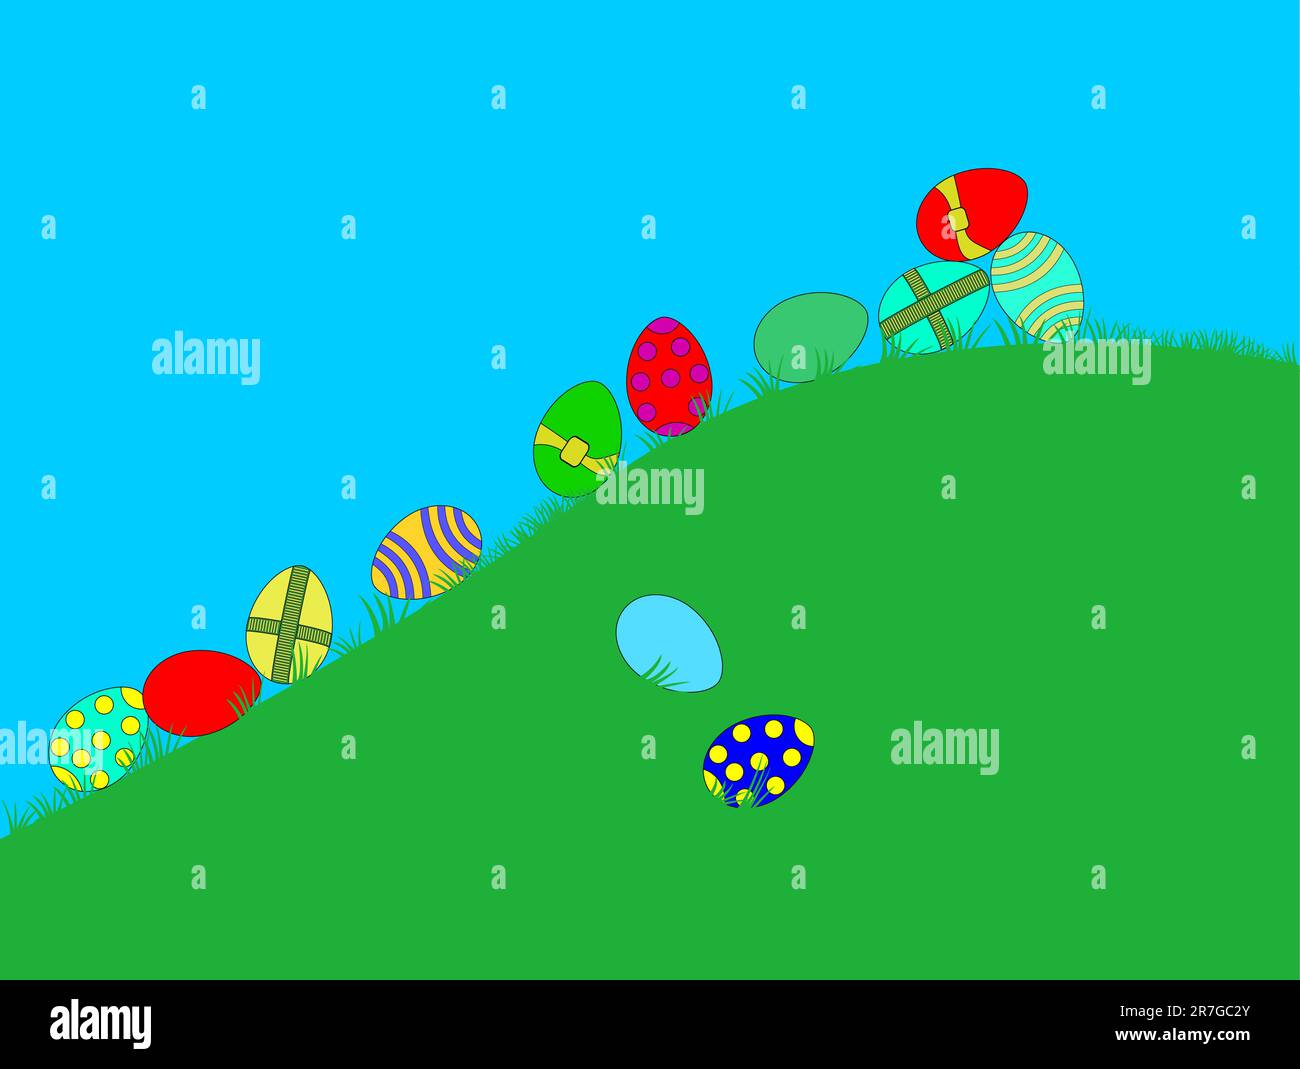 Le uova di pasqua dai colori vivaci scendono da una collina soleggiata Illustrazione Vettoriale